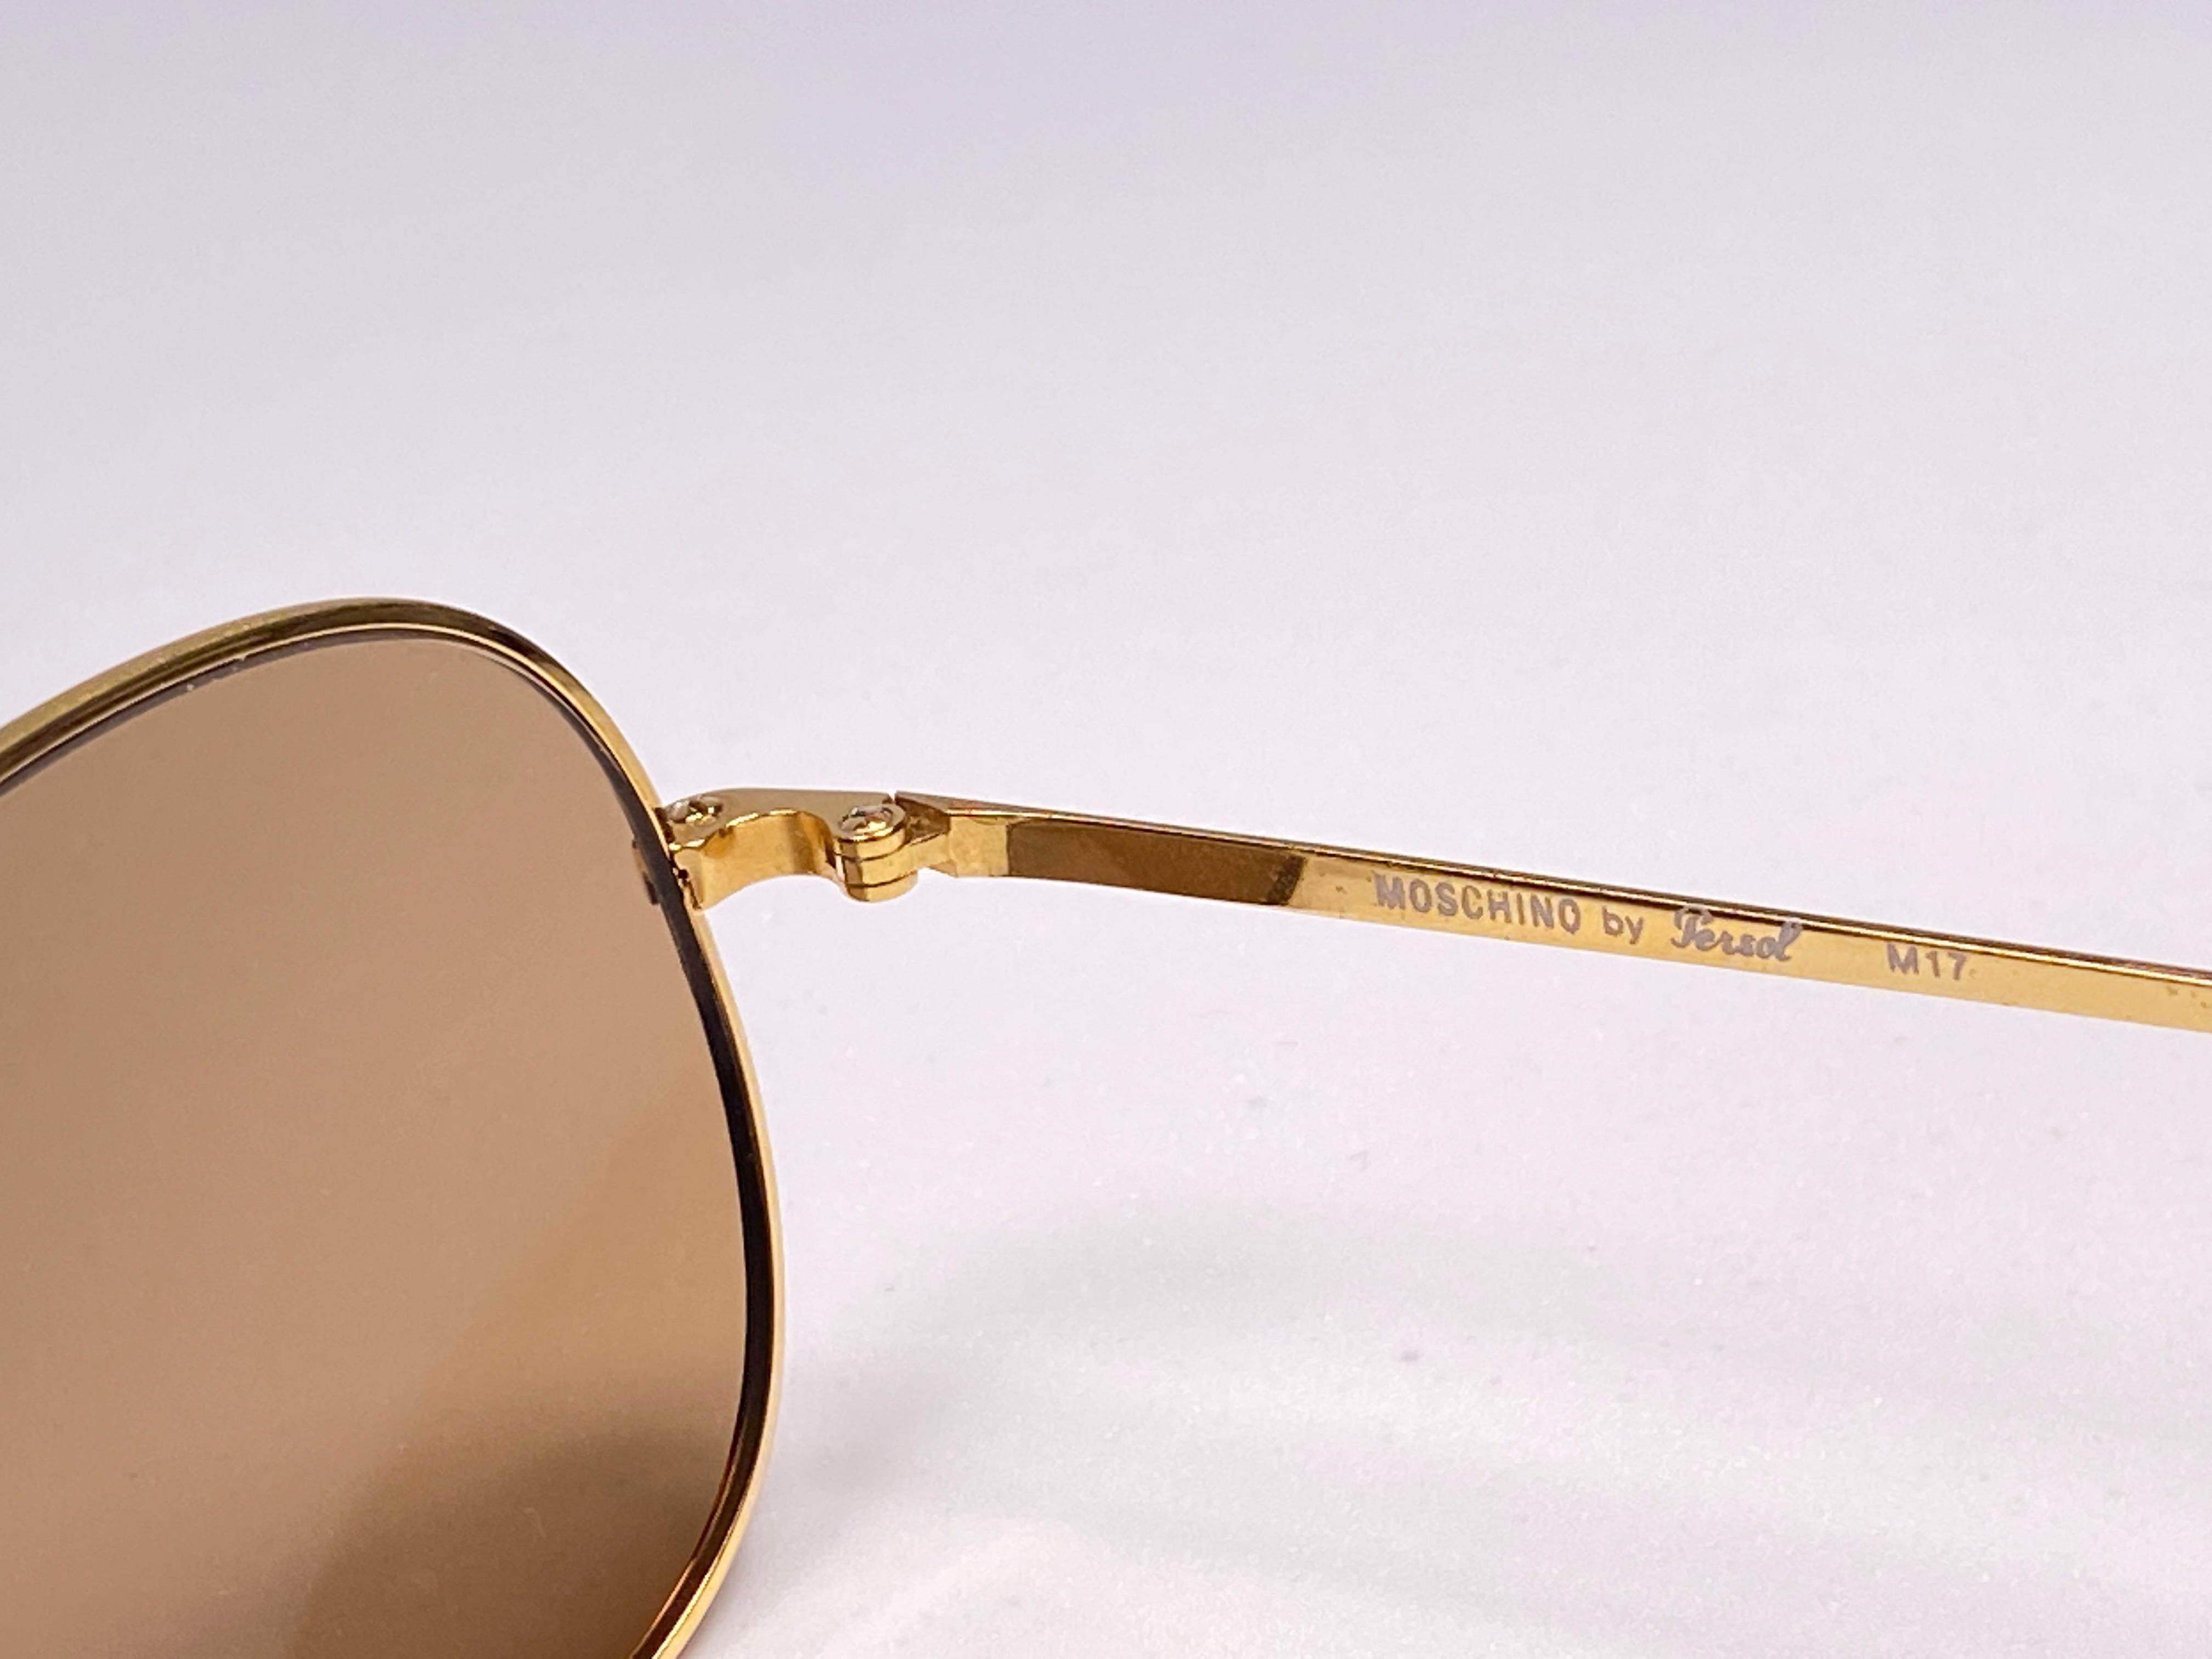 Moschino by Persol M17 Goldspiegel-Sonnenbrille im Vintage-Stil, hergestellt in Italien im Angebot 1